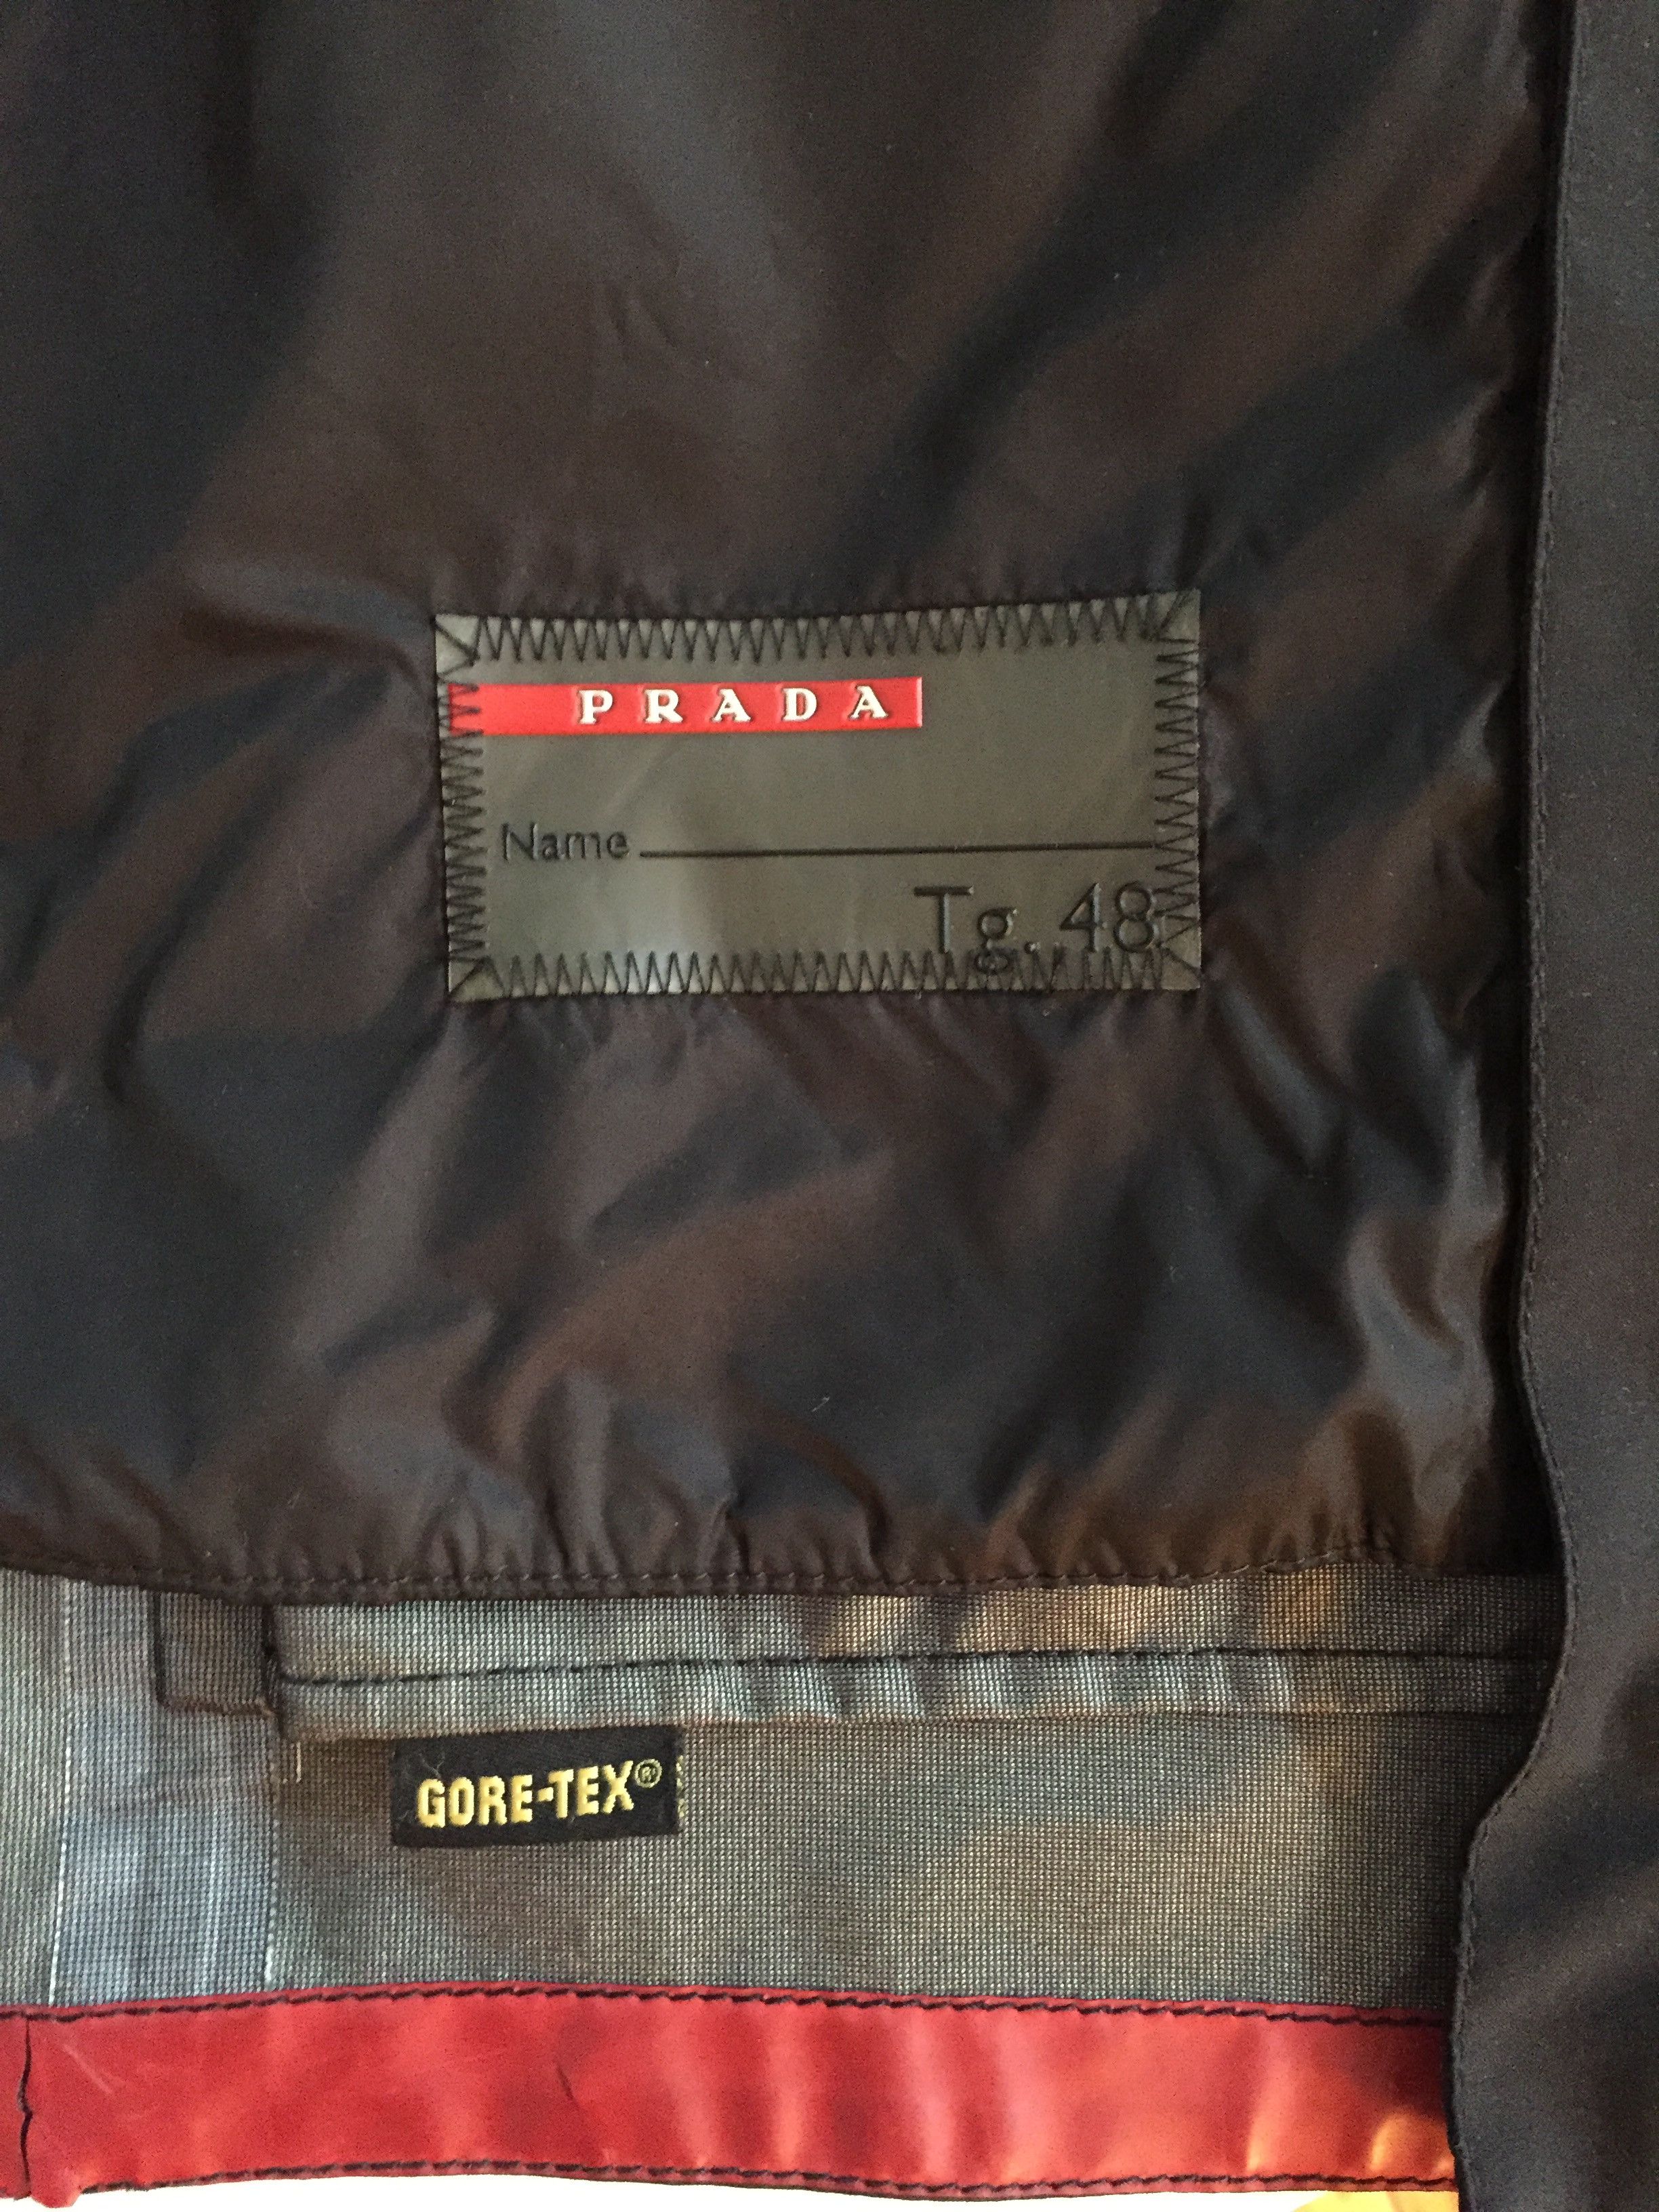 Prada Prada Sport Gore-Tex Coat Size US M / EU 48-50 / 2 - 4 Thumbnail